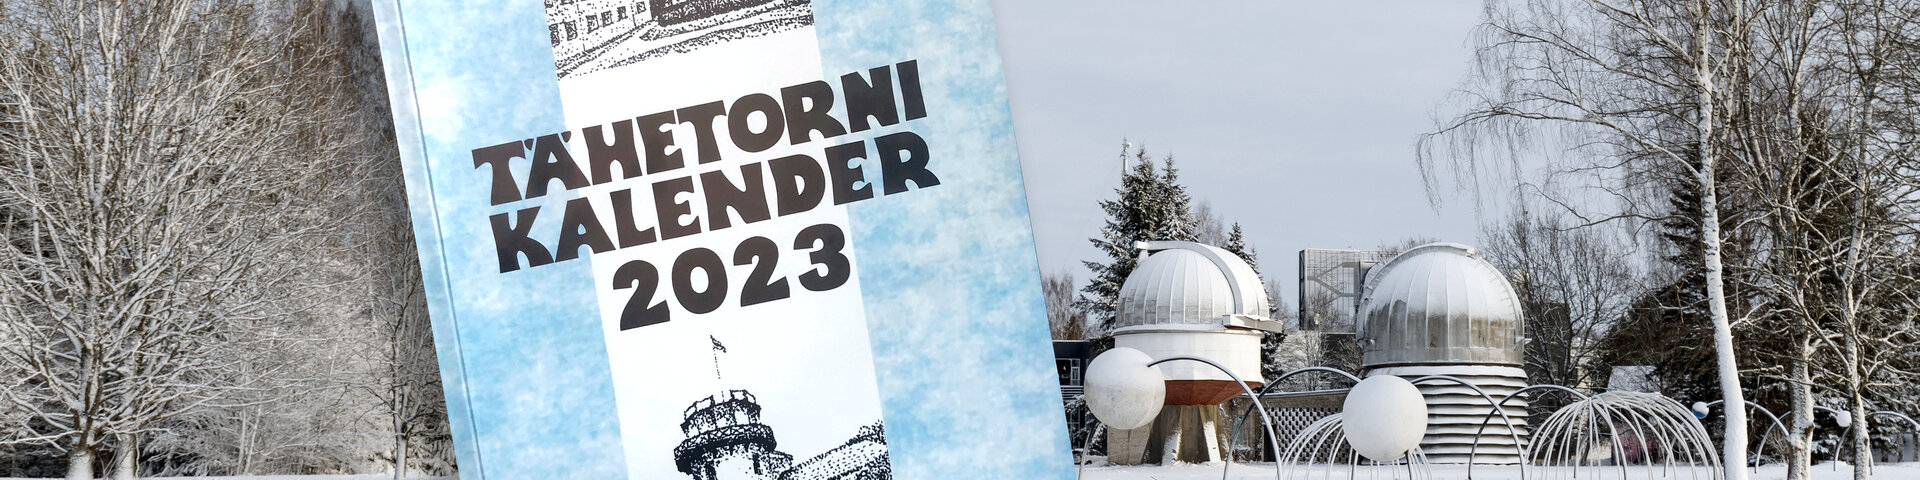 Tähetorni kalender 2023 - Tartu observatoorium - Tartu Ülikool